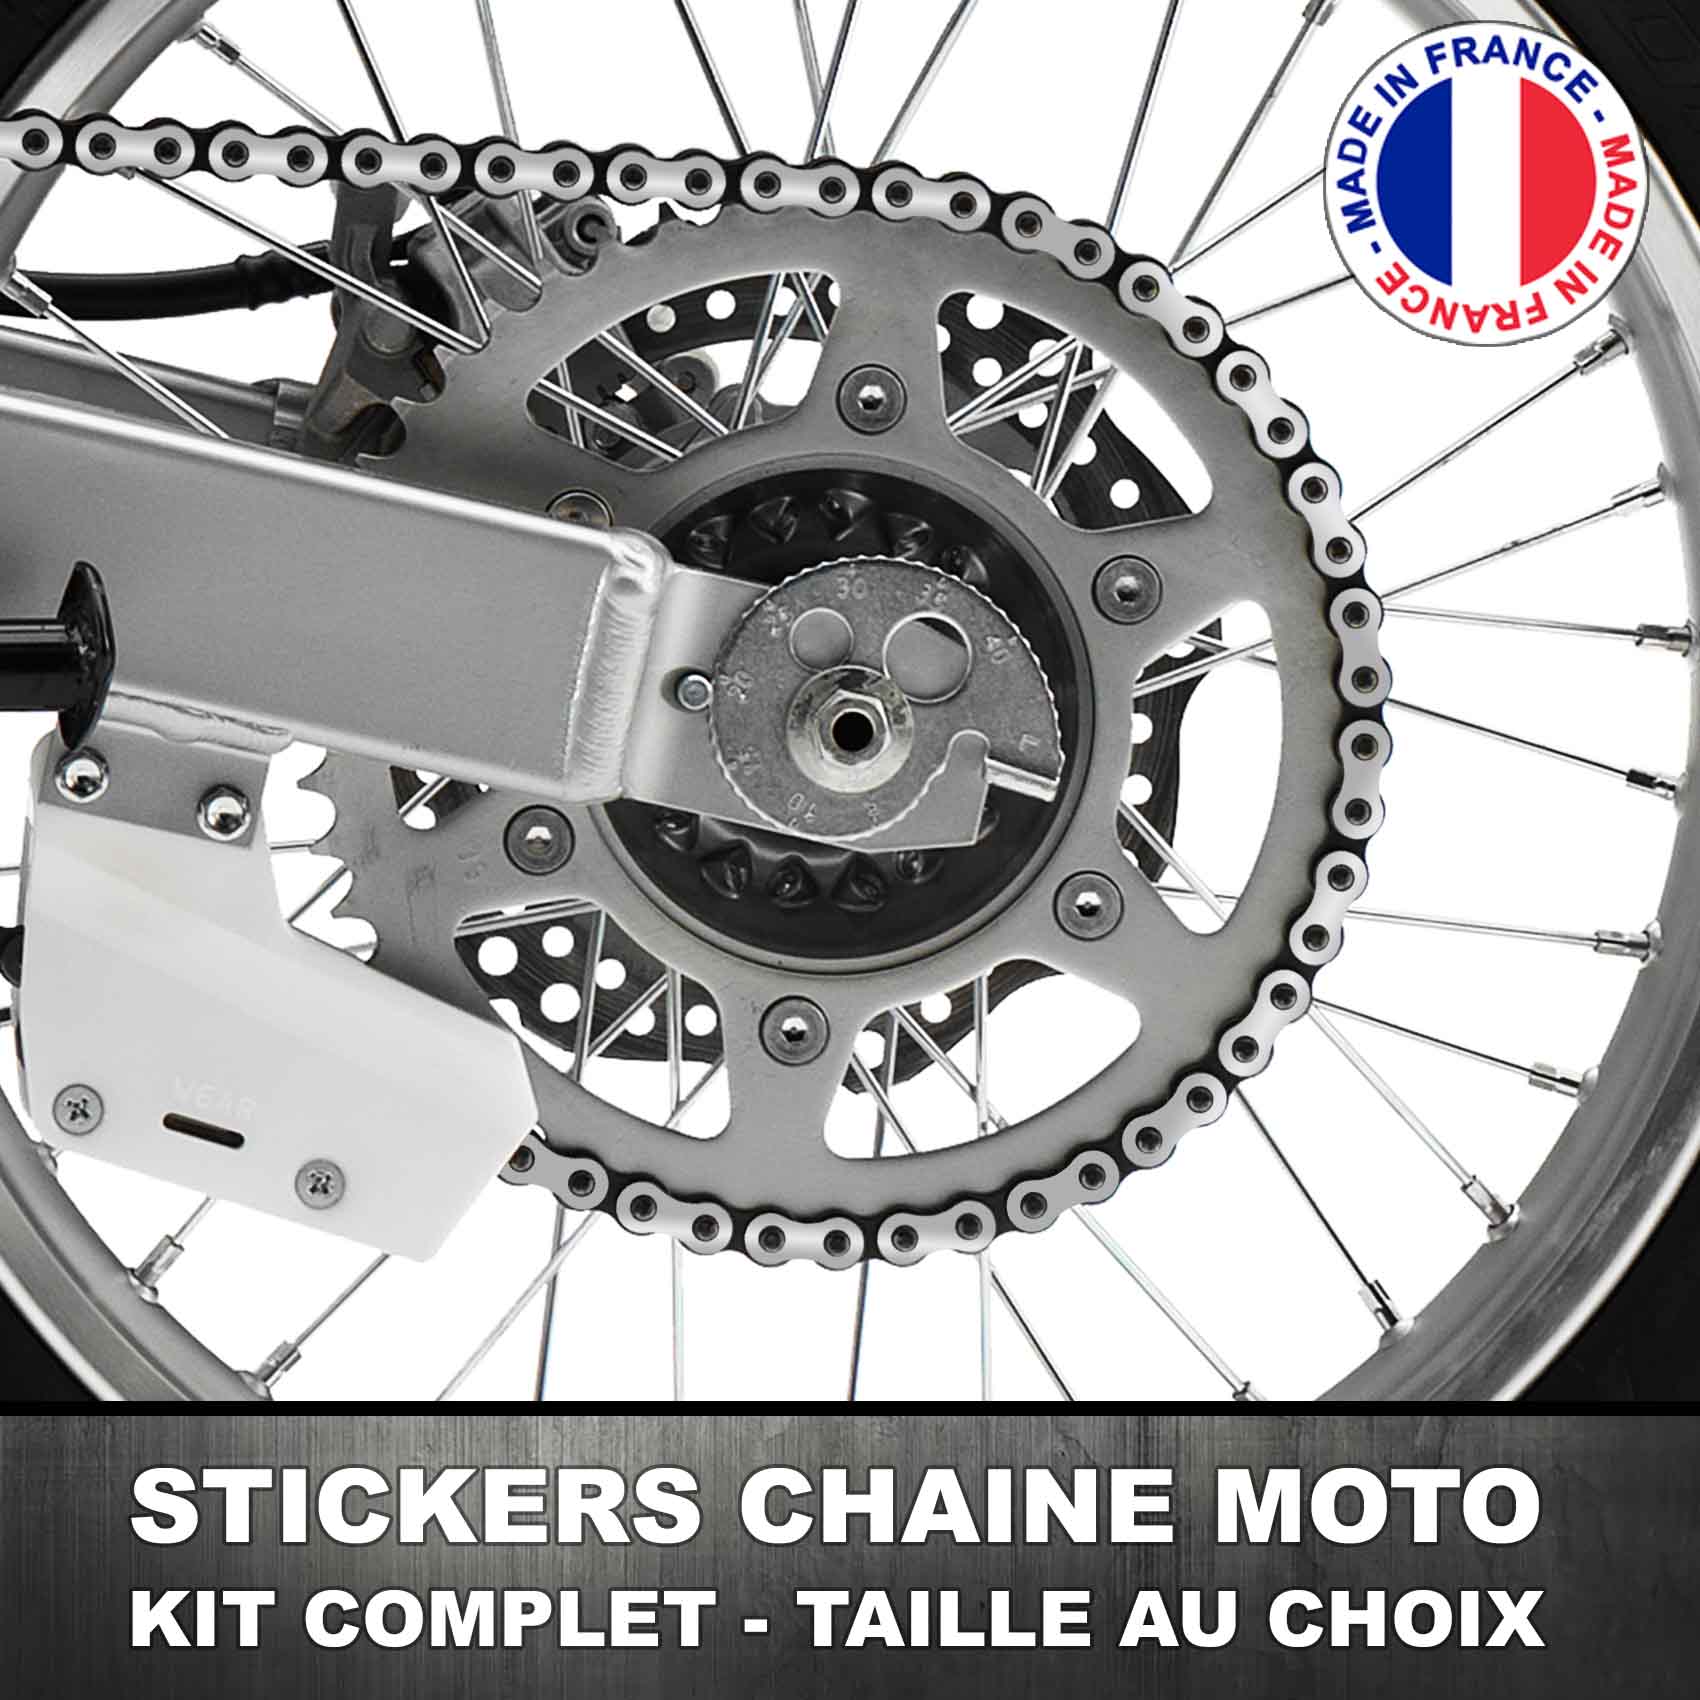 Stickers Chaine Moto Argent